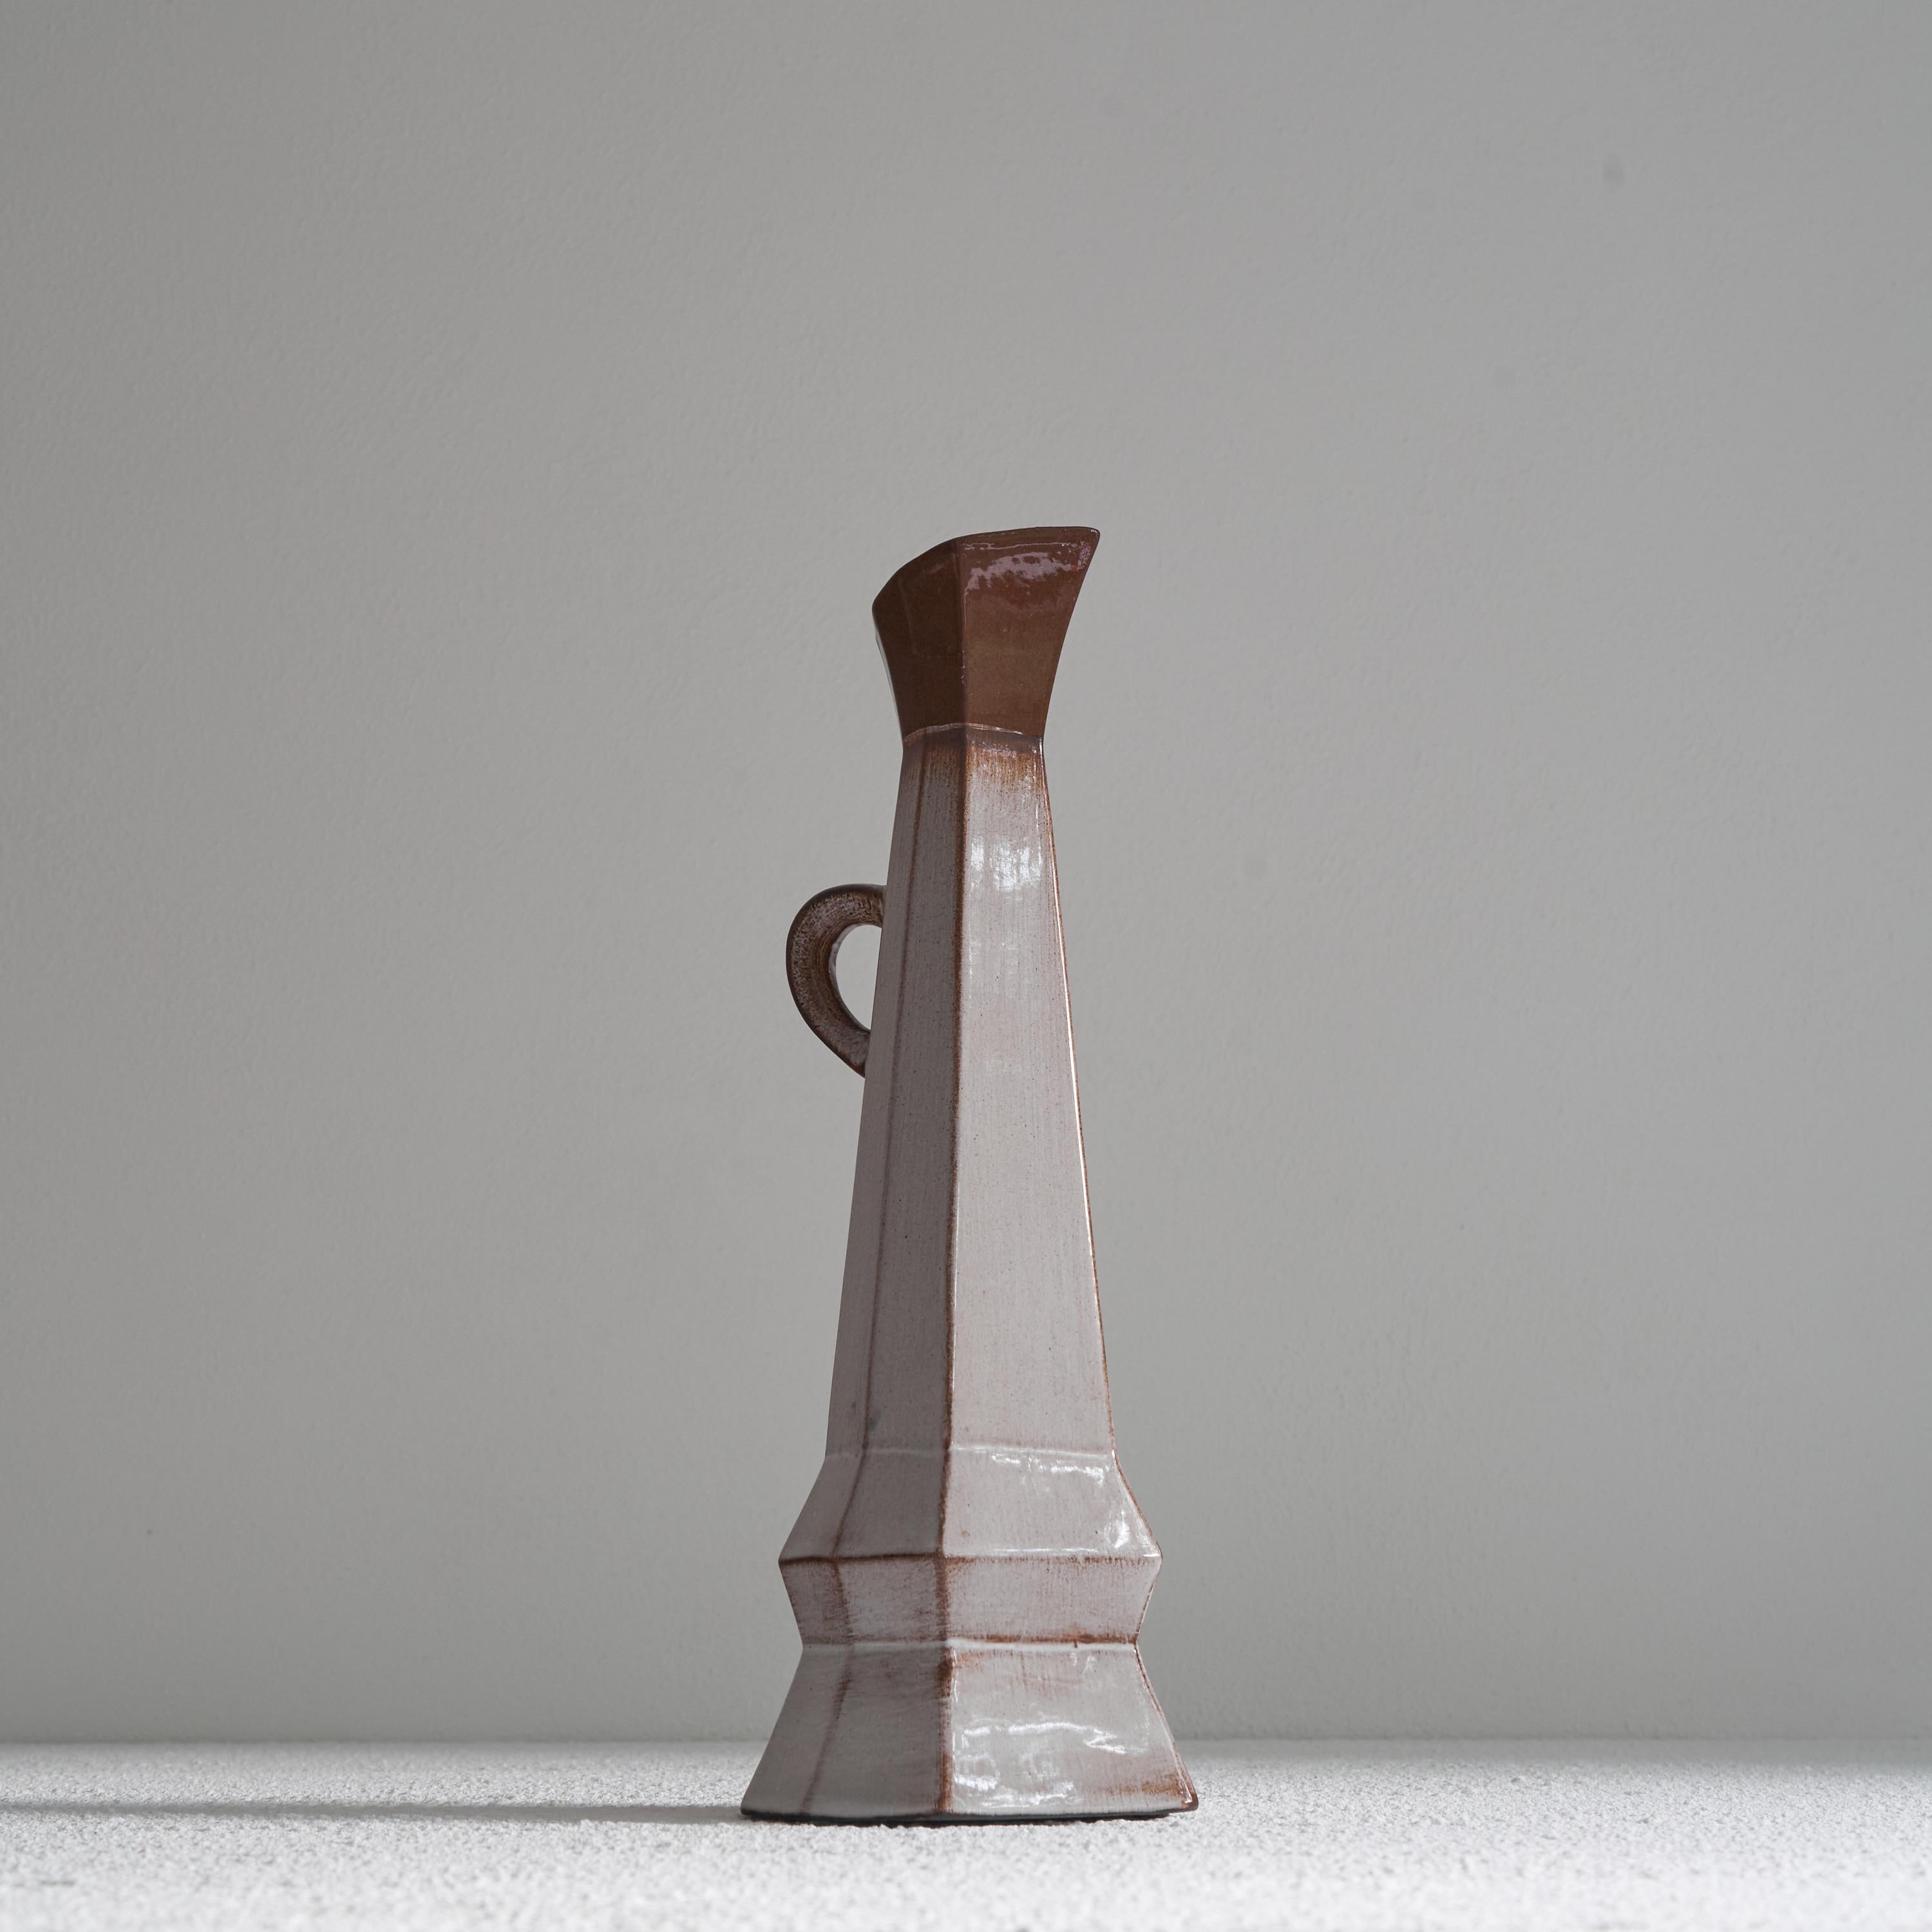 Vase-pichet inhabituel en poterie du Studio cubiste. Milieu du XXe siècle. 

Vase-pichet très inhabituel et asymétrique en poterie de studio avec une glaçure colorée attrayante. Des formes cubistes intéressantes et des angles aigus lui confèrent